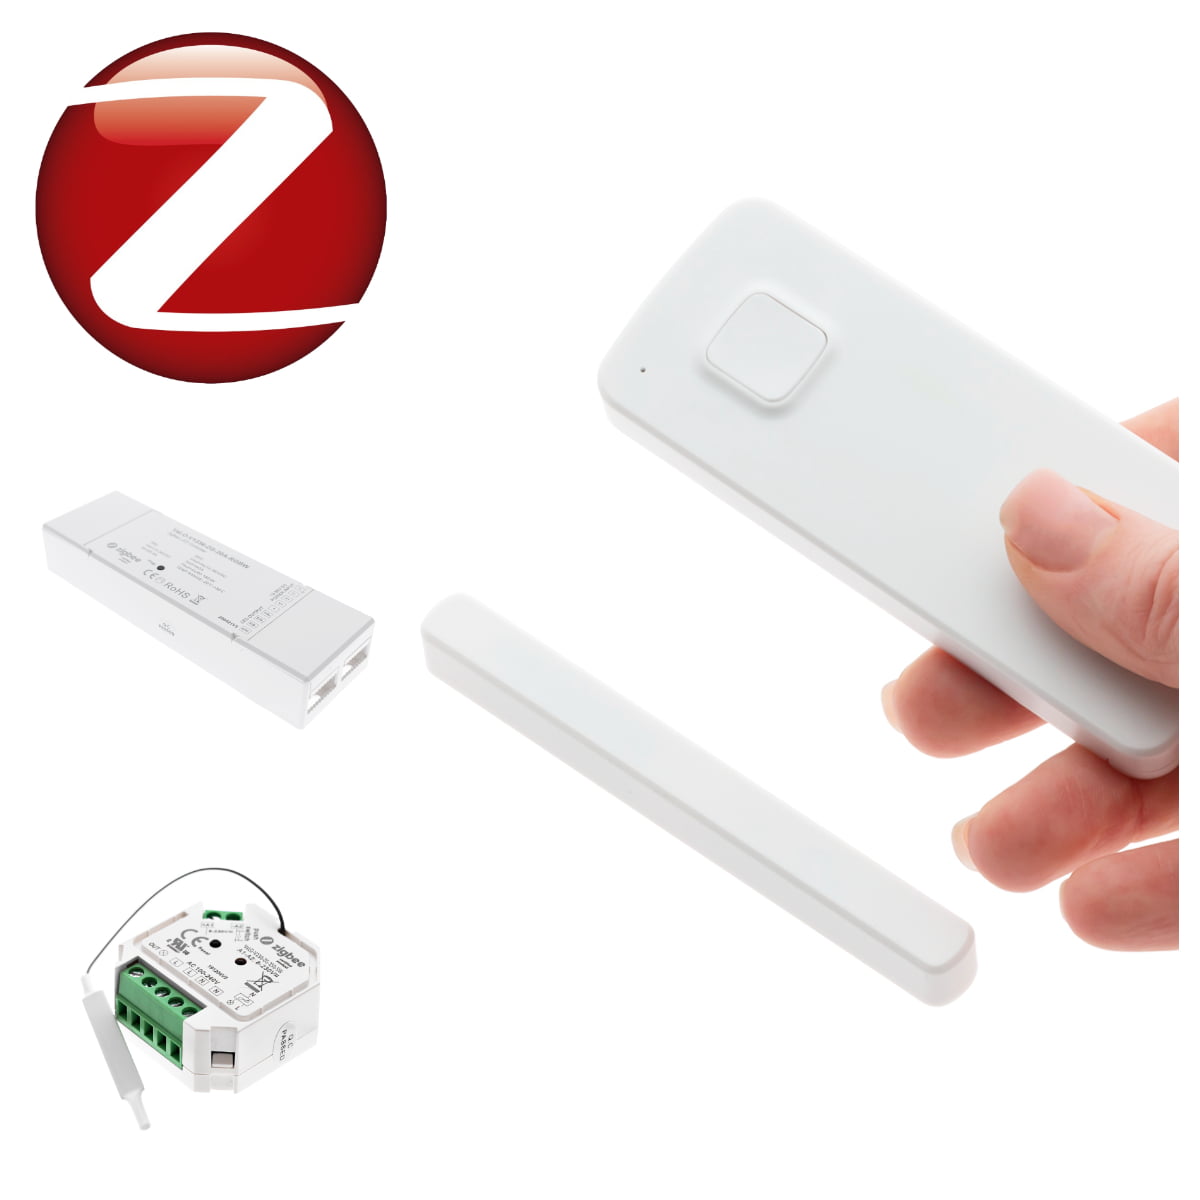 Zigbee-älyvalaistus tuotteita ovat myös esimerkiksi ovisensori (oik.), joka sytyttää ja sammuttaa valot oven avaamisen mukana.